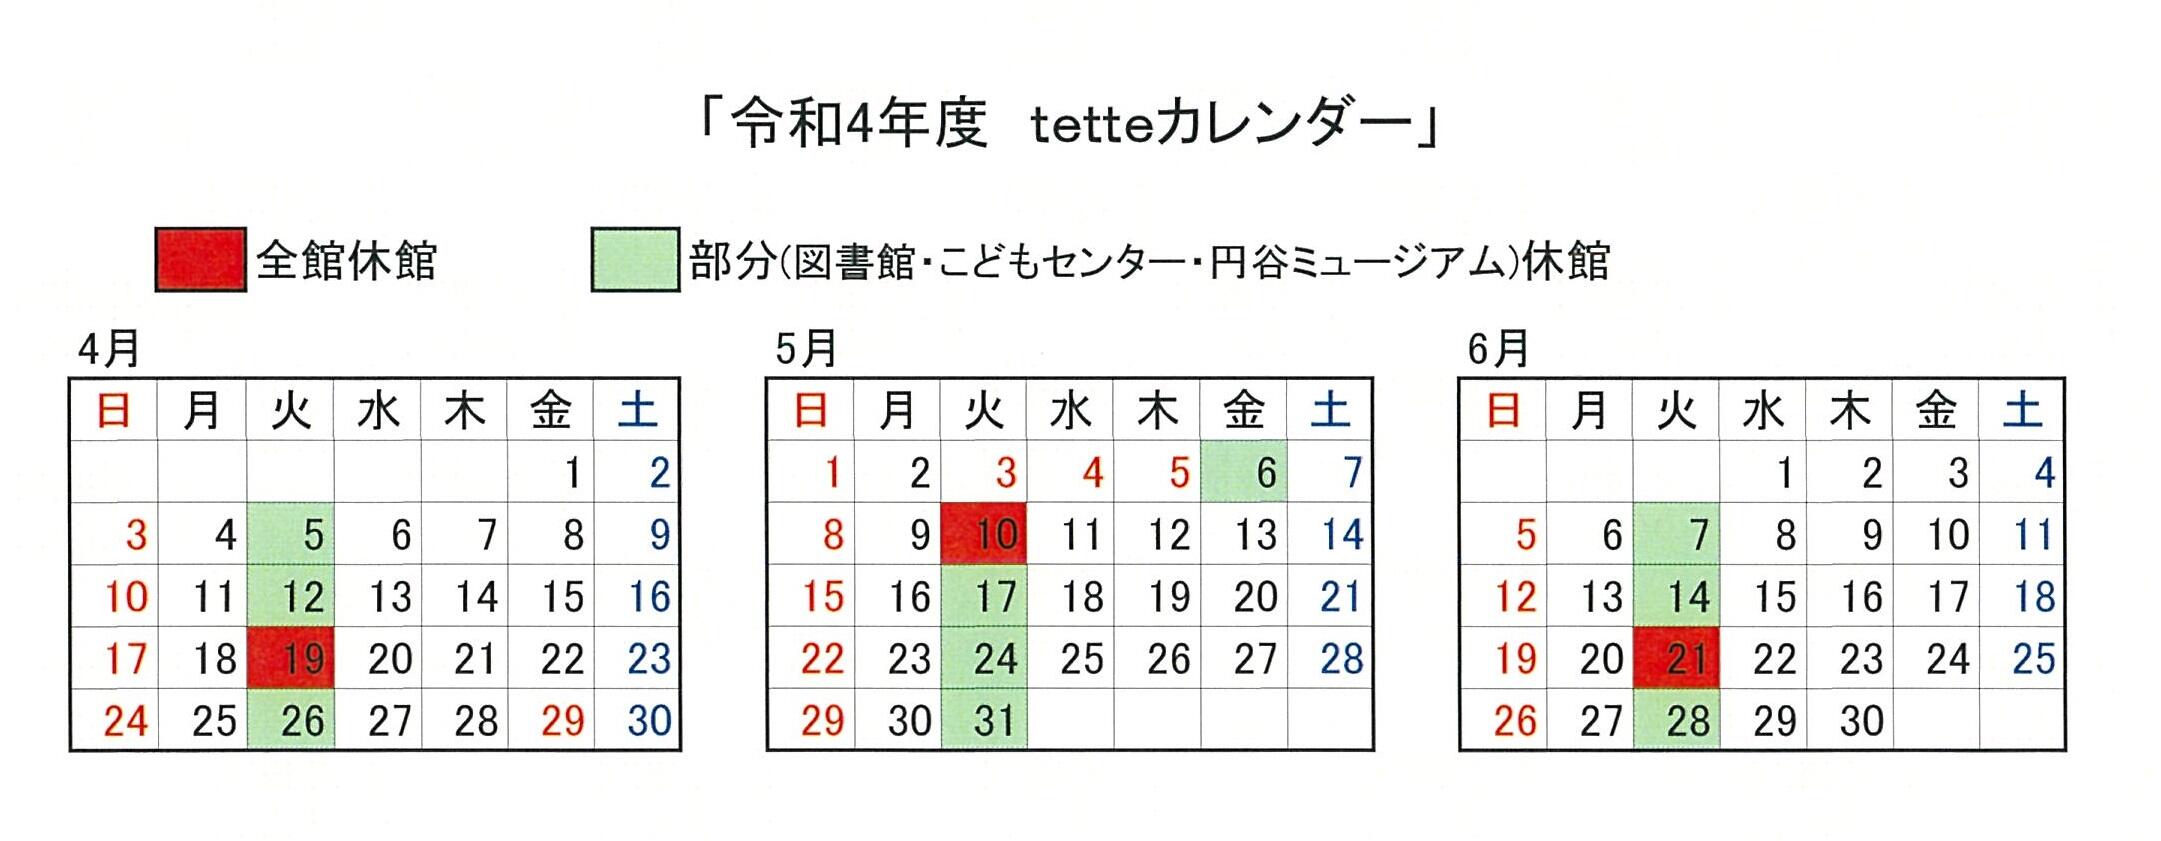 令和4年4月から6月までのtetteカレンダー.jpg